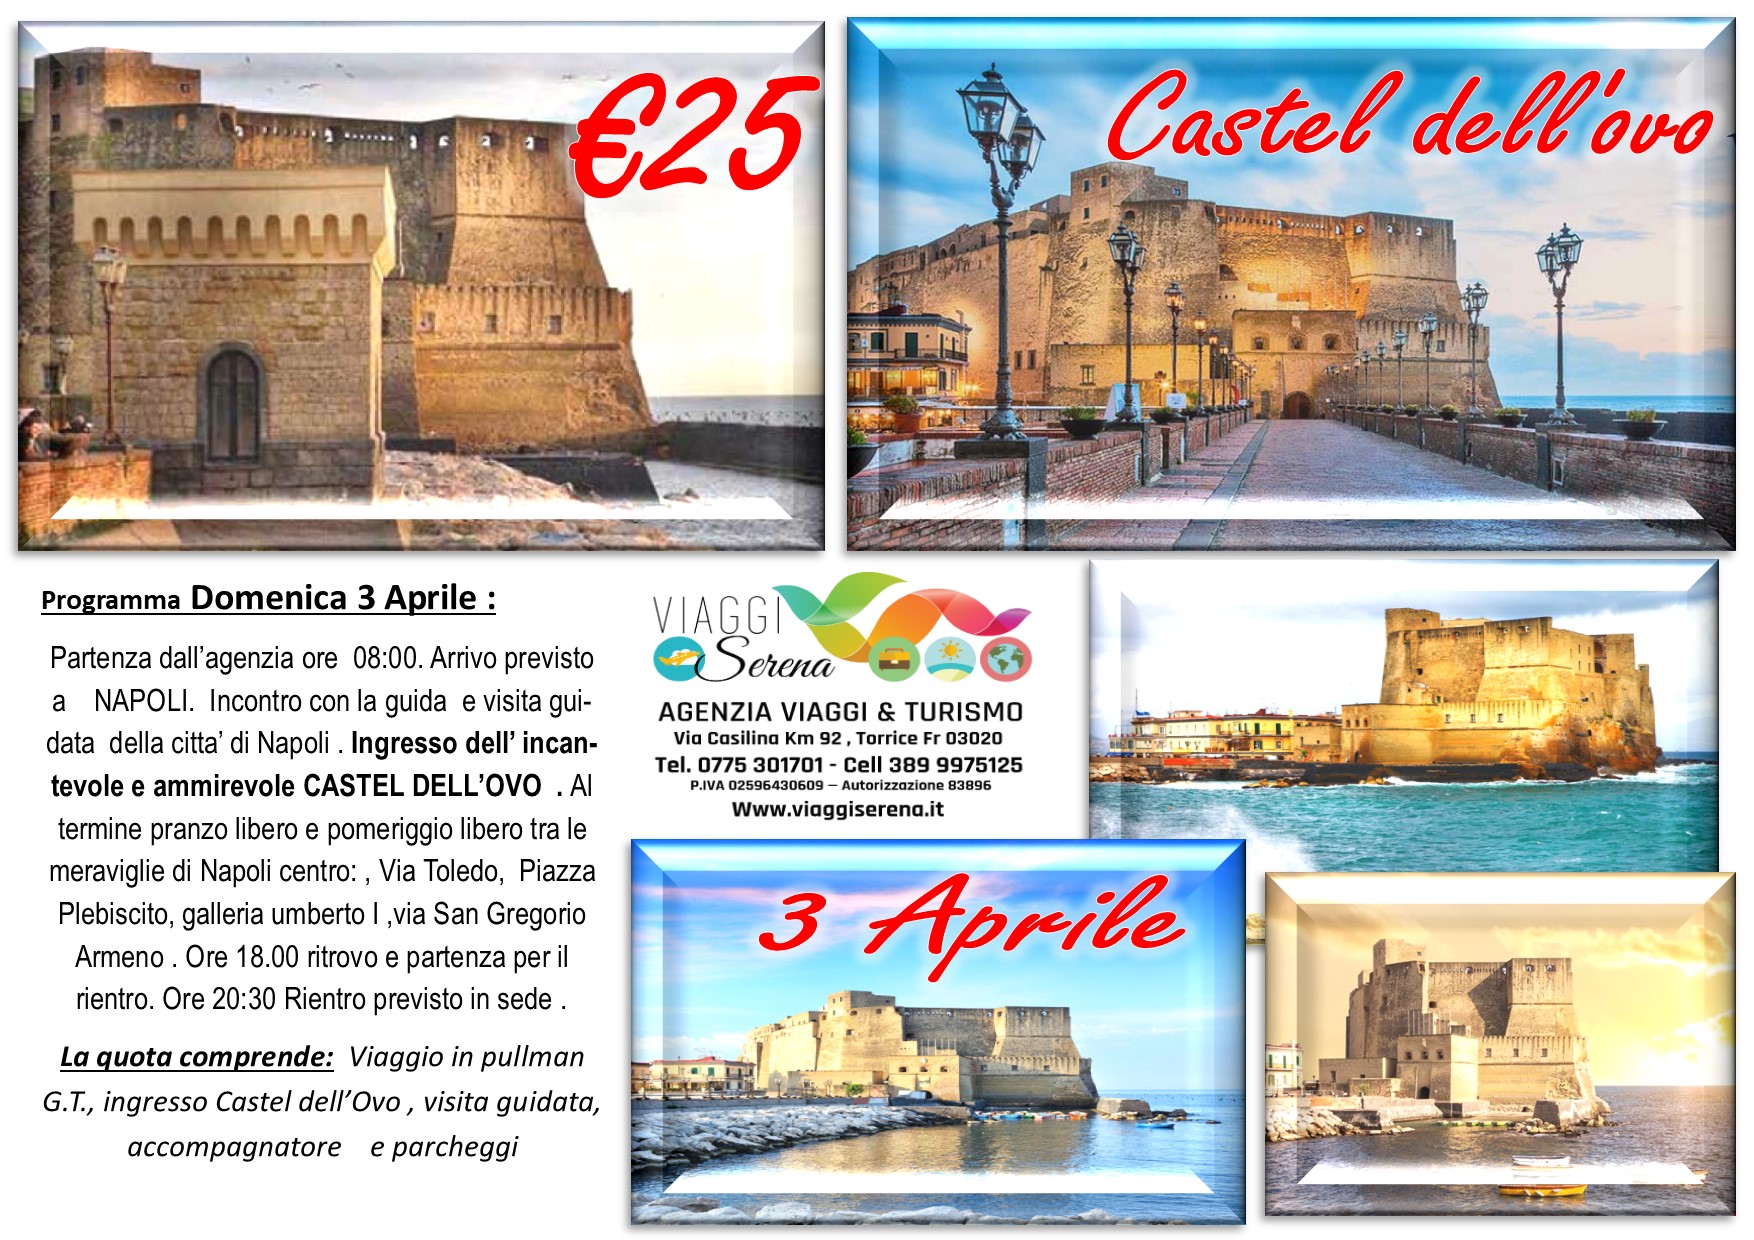 Viaggi di Gruppo: Castel dell’Ovo 3 Aprile € 25,00